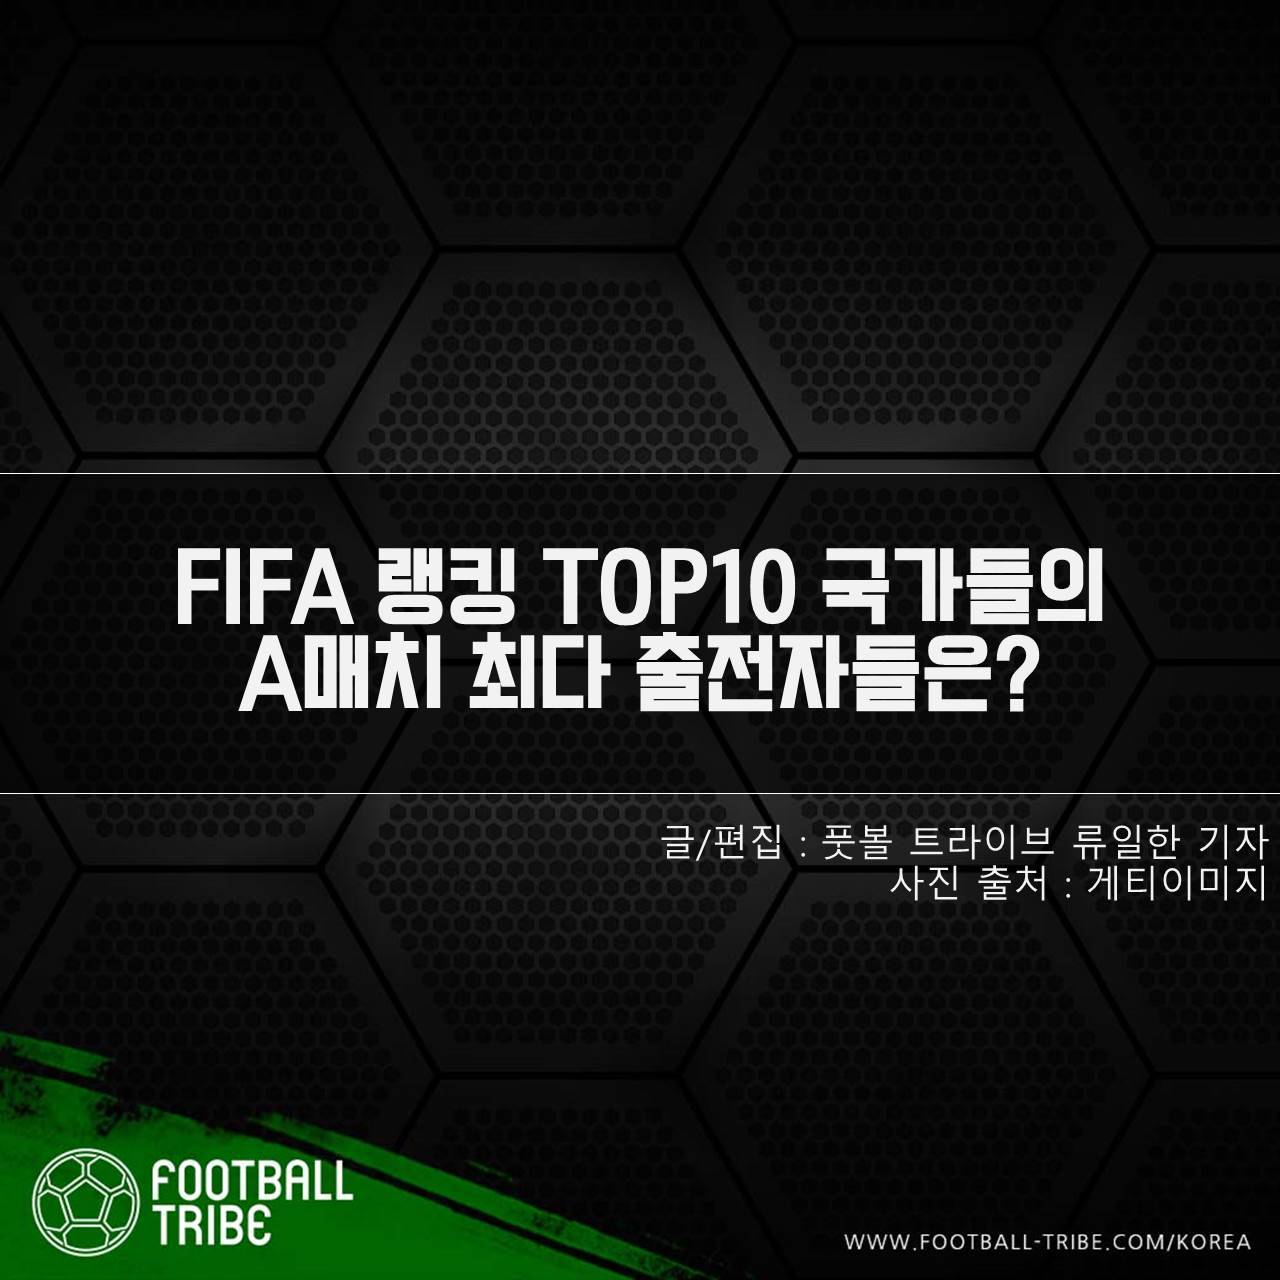 [카드 뉴스] FIFA 랭킹 TOP10 국가들의 A매치 최다 출전자들은?